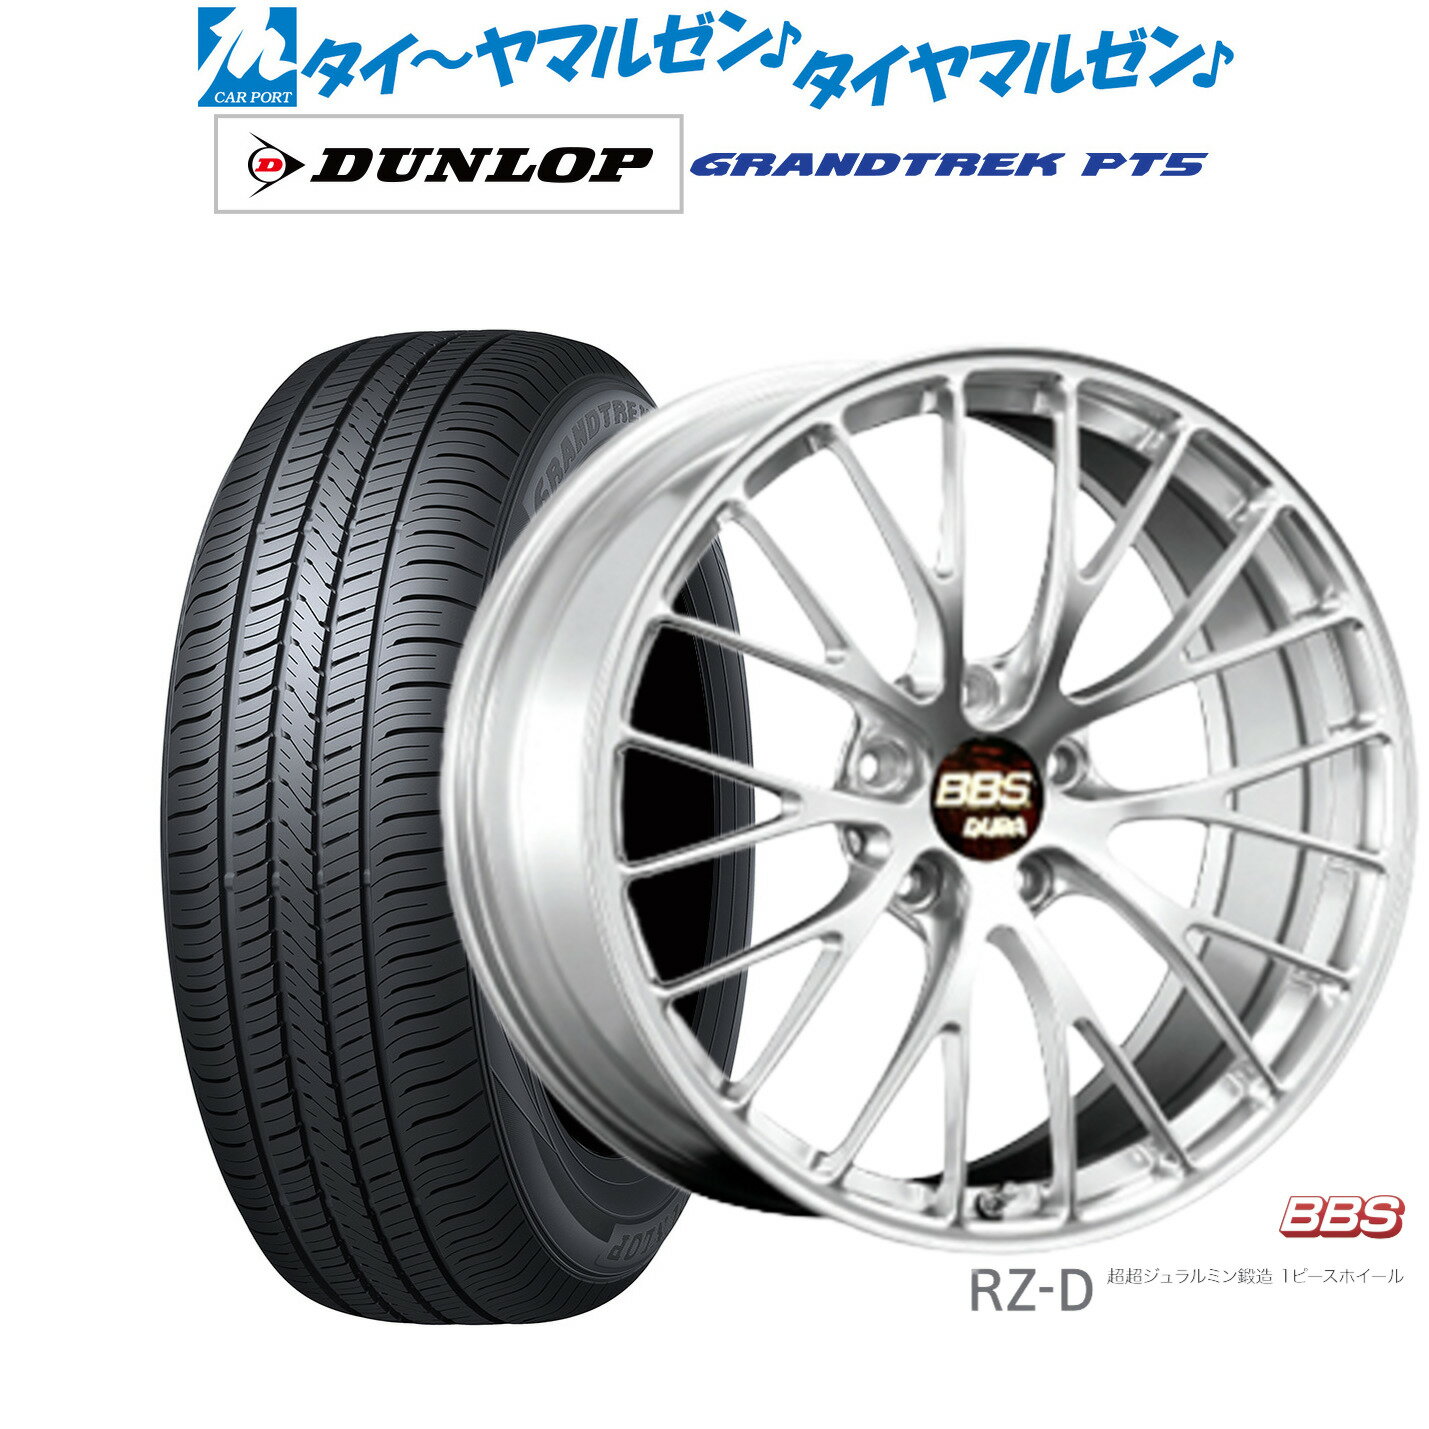 新品 サマータイヤ ホイール4本セットBBS JAPAN RZ-D19インチ 8.5Jダンロップ グラントレック PT5235/50R19